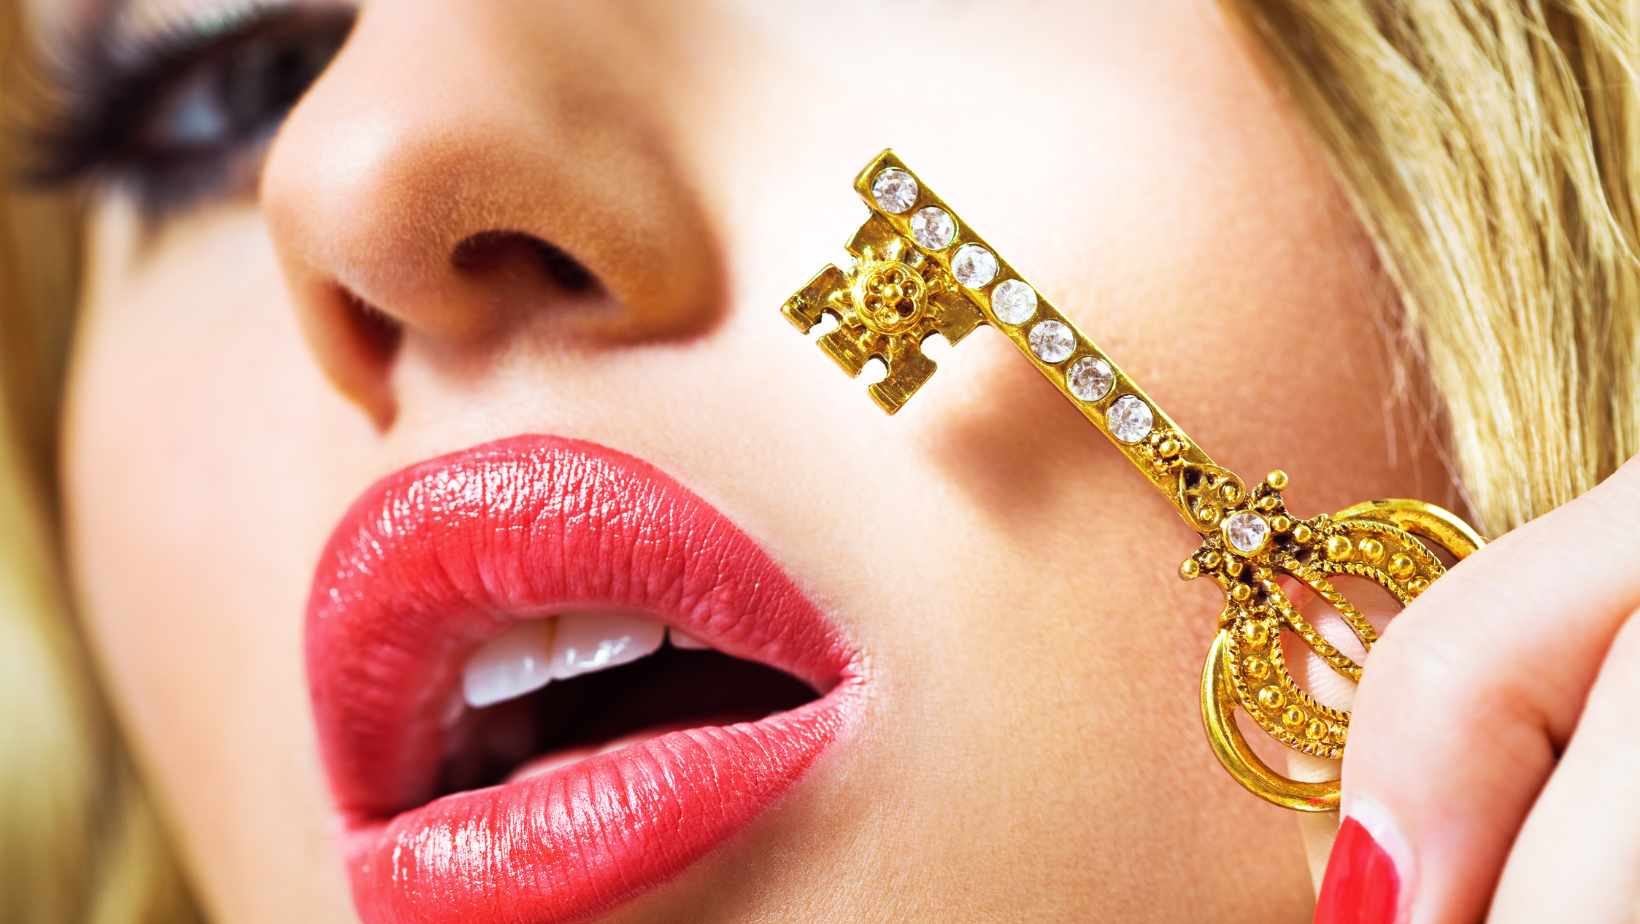 Ausschnitt eines weiblichen Gesichts. Die Lippen, rot-rosa geschminkt und leicht geöffnet. Ein goldener Schlüssel liegt leicht an der Wange an.